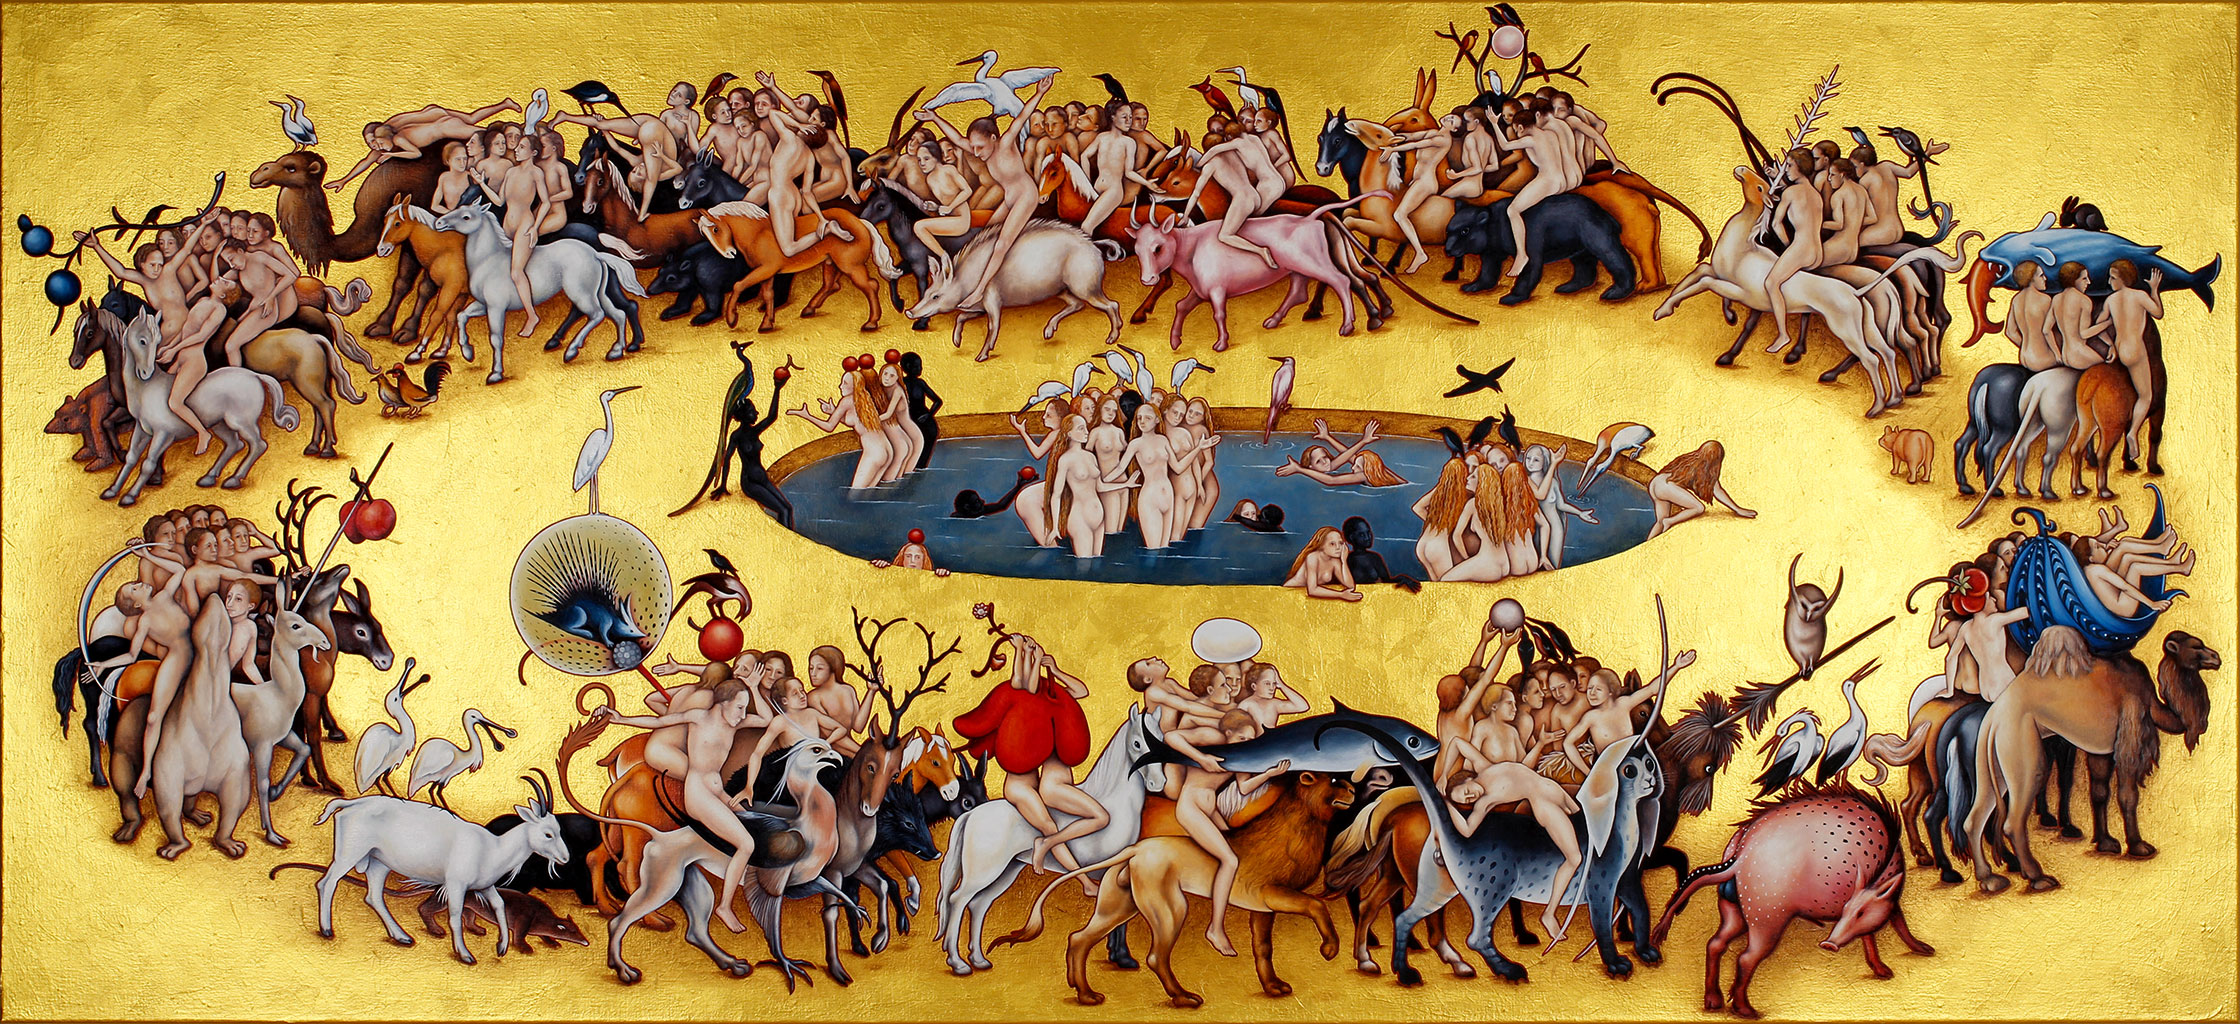 Annette von der Bey, nackte Männer reiten auf Tieren im Kreis um einen Brunnen mit nackten Frauen